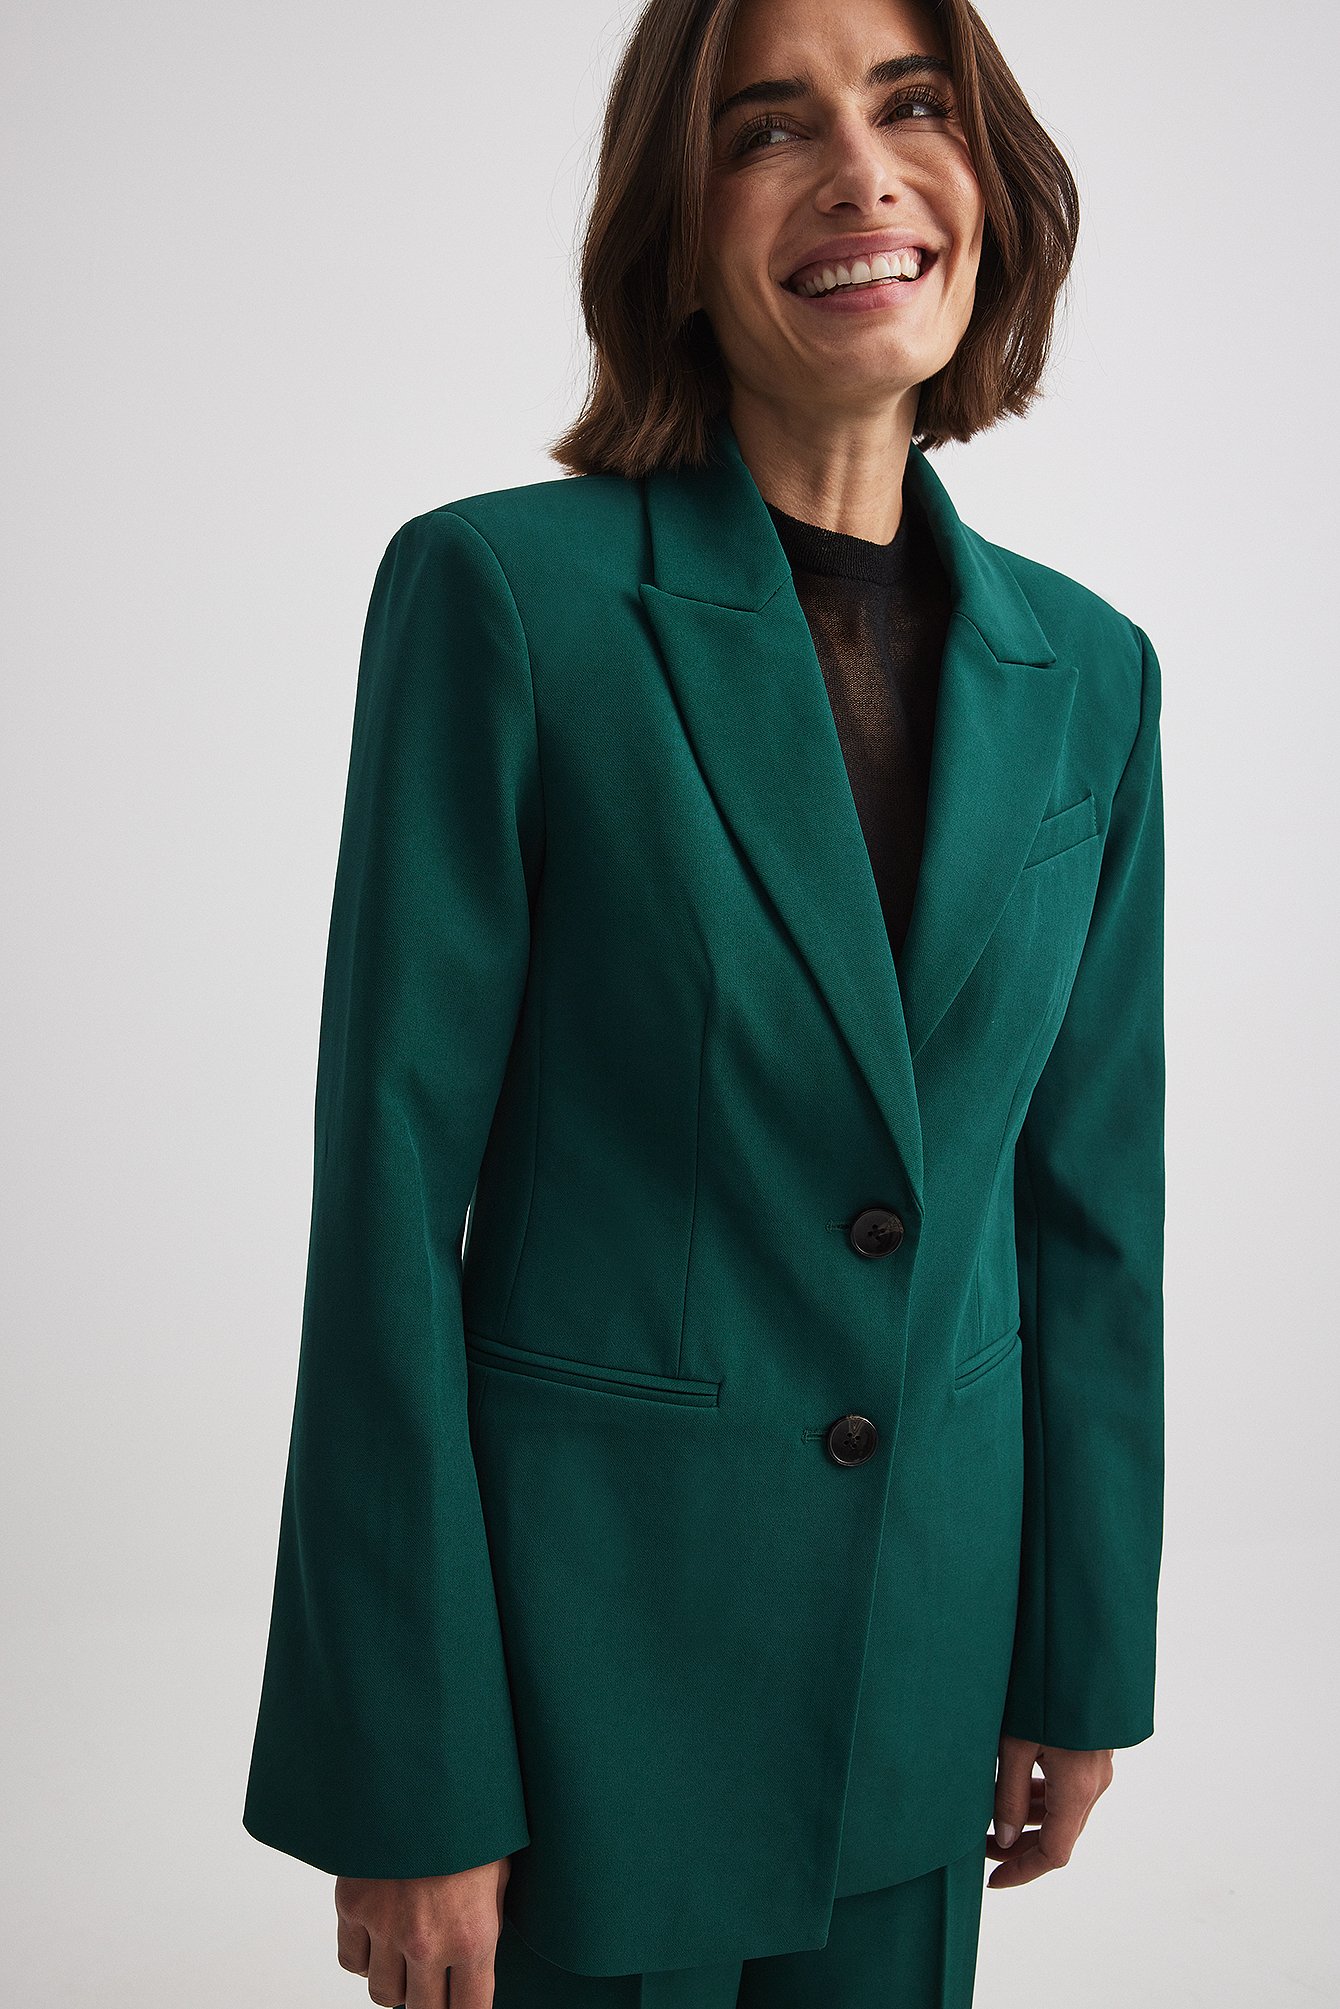 Women's Dark Green Suit